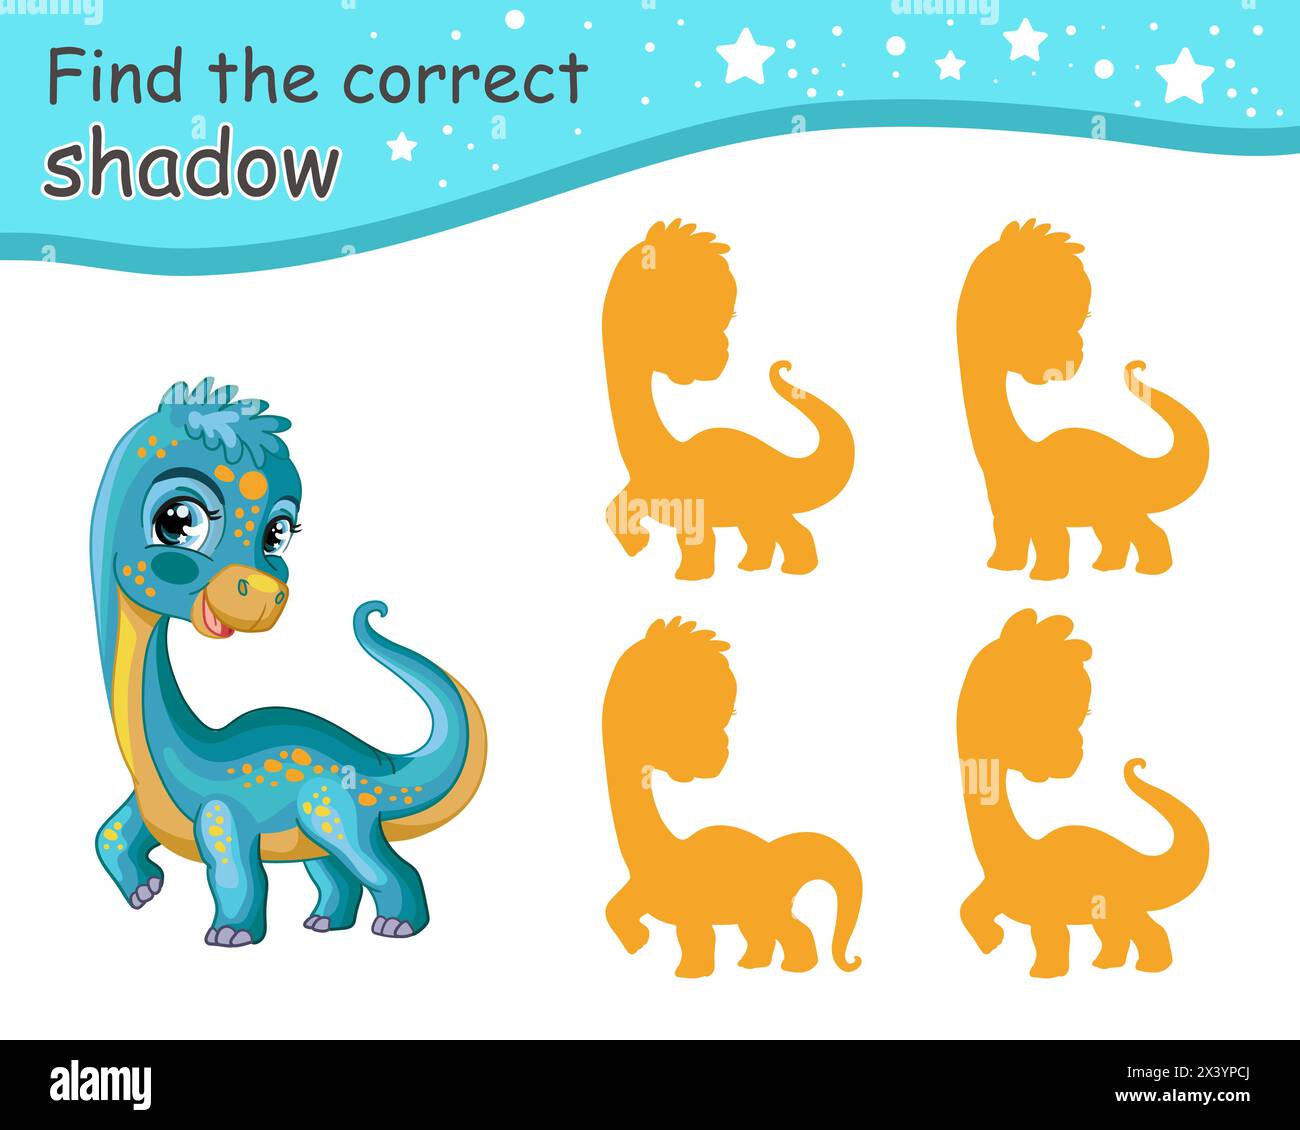 Suchen Sie den richtigen Schatten. Niedlicher Cartoon Diplodocus Dinosaurier. Pädagogisches Matching-Spiel für Kinder mit Zeichentrickfigur. Aktivität, Logikspiel, Lernen c Stock Vektor